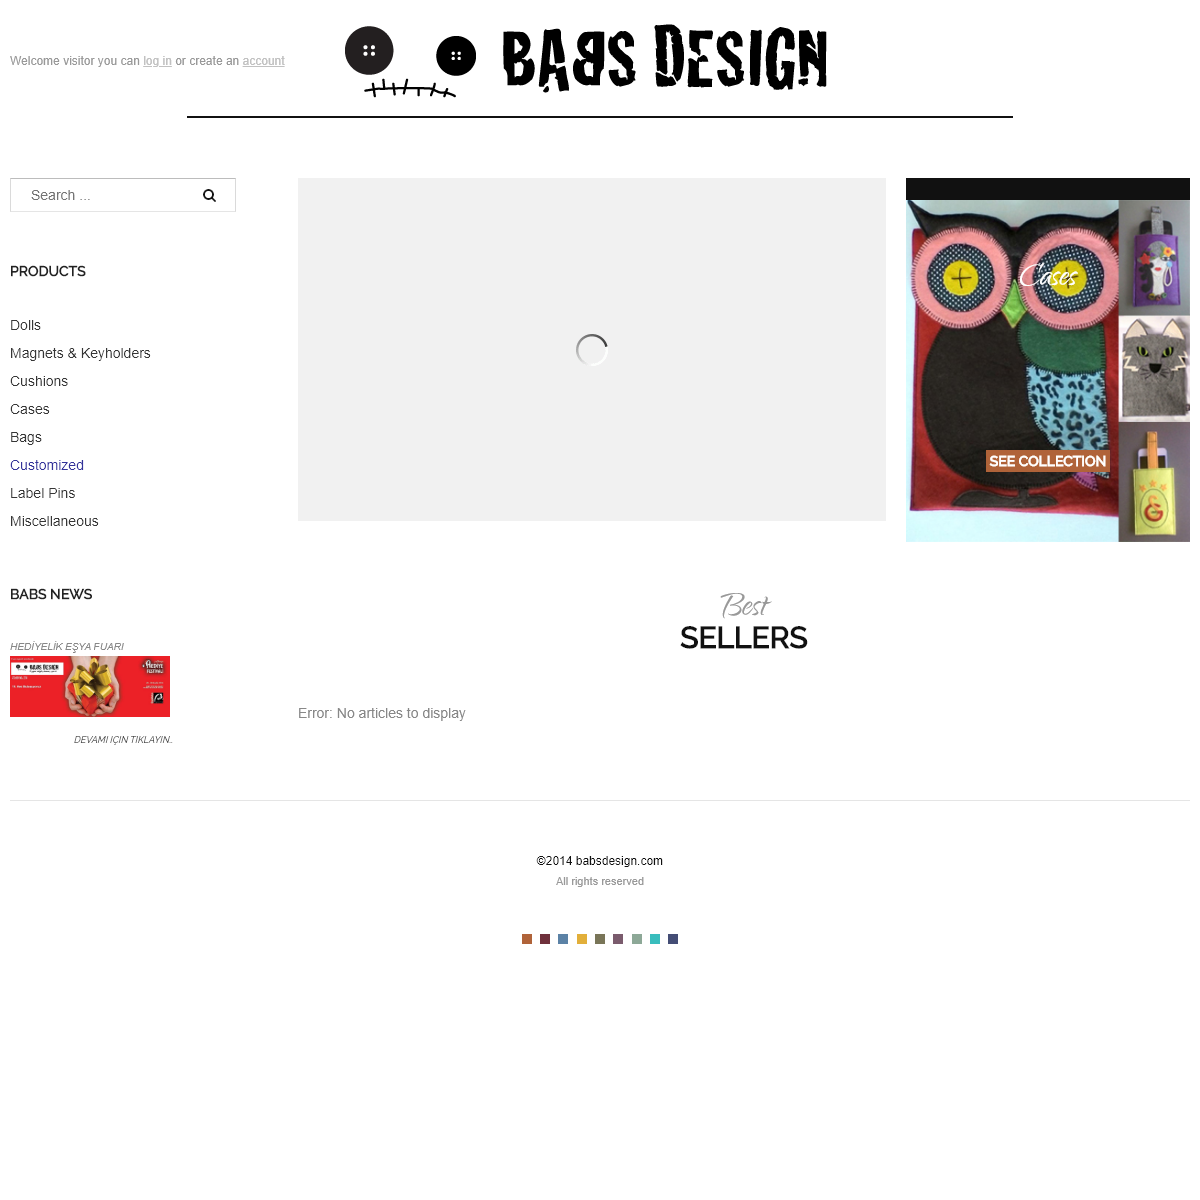 A complete backup of babsdesign.com